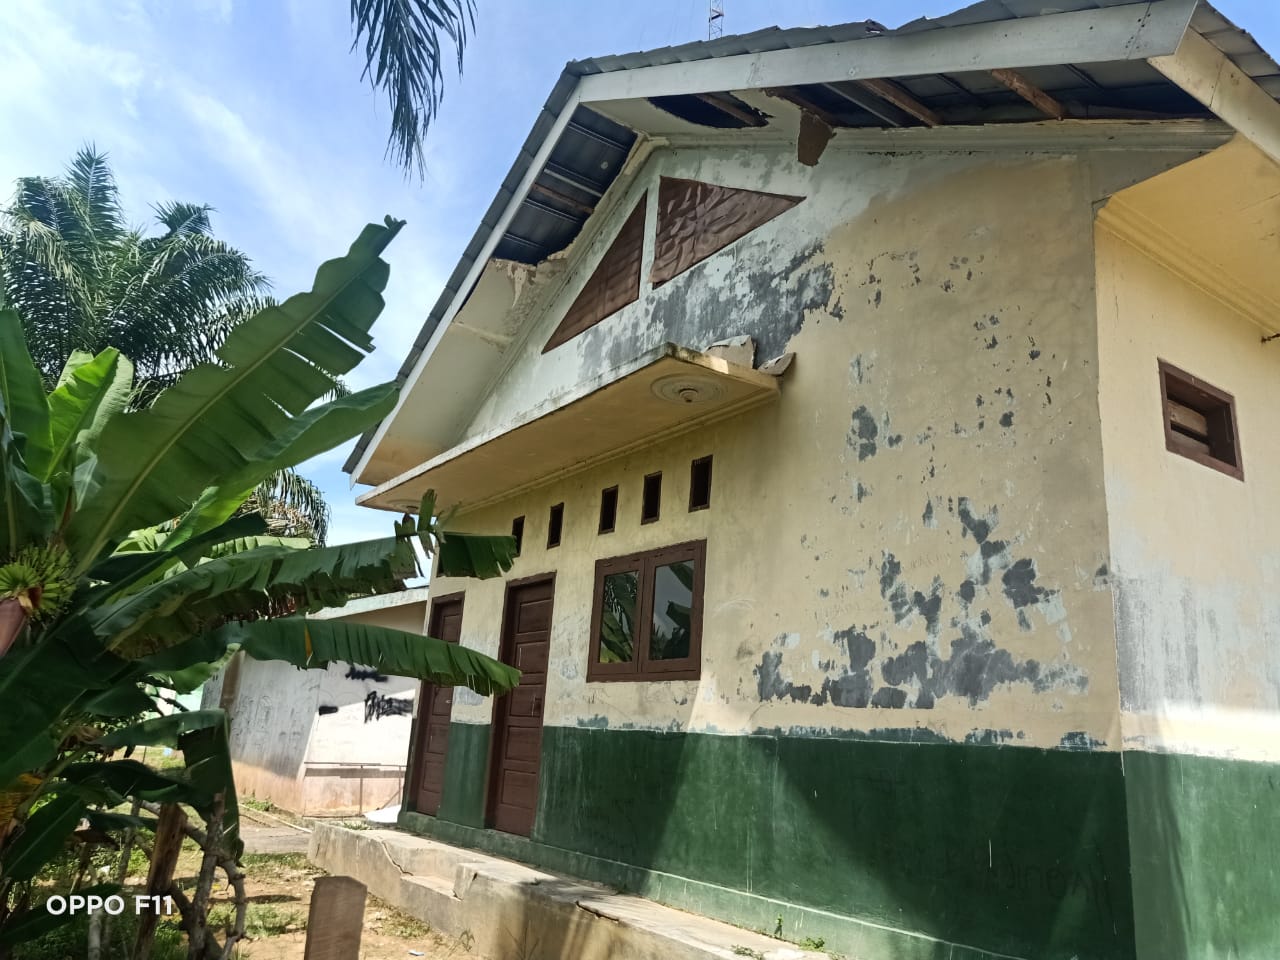 Masyarakat: Berharap Pak Bupati Kapan Bangun Balai desa Harapan Jaya